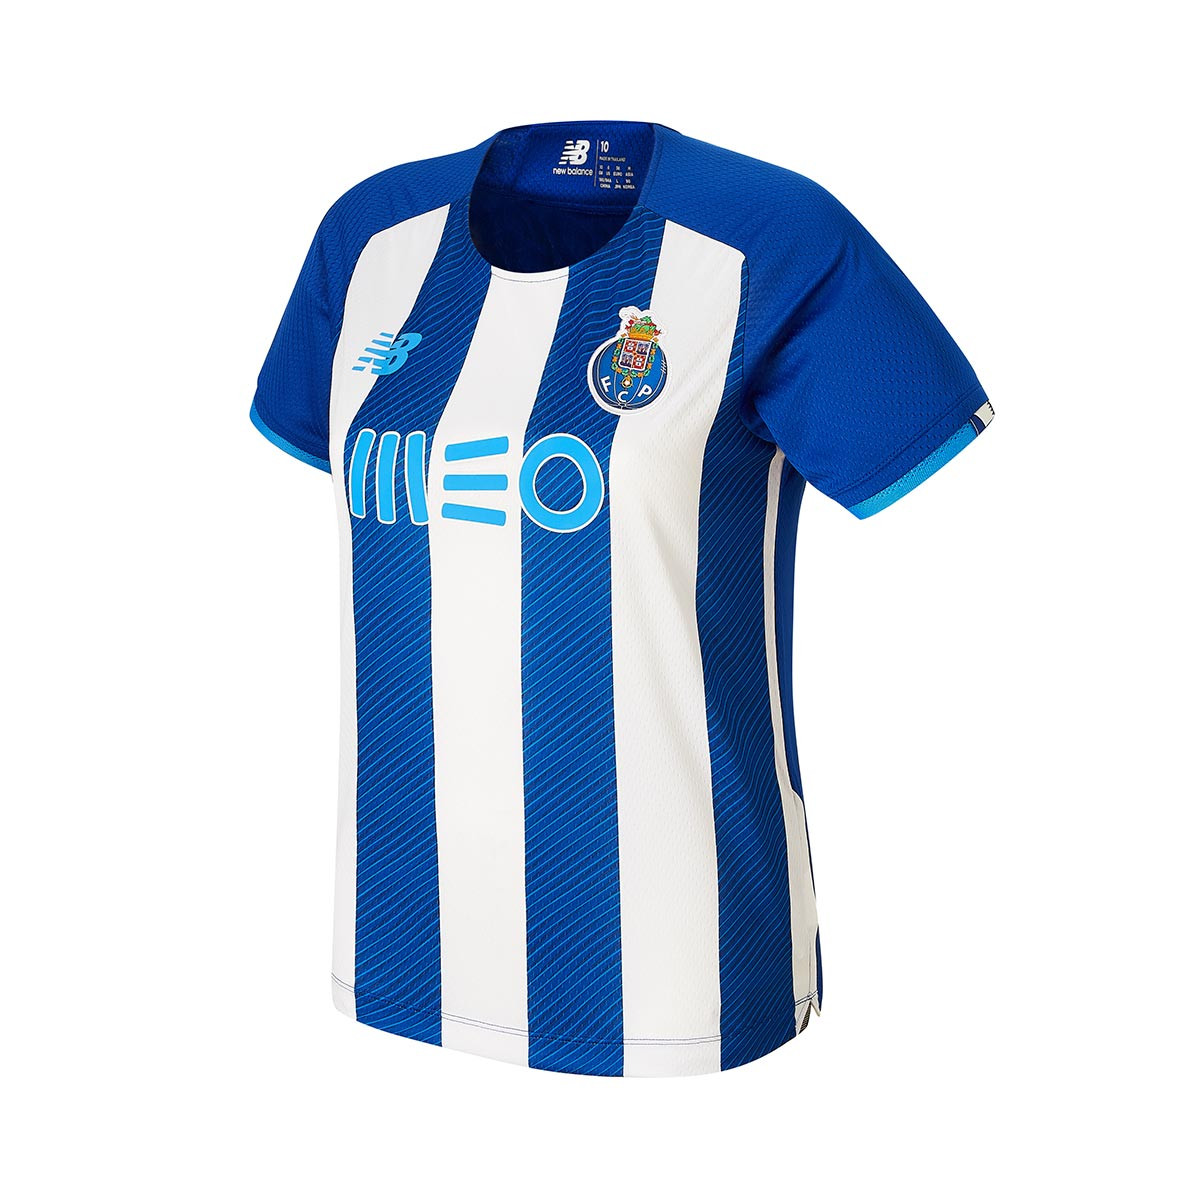 Camiseta futbol maglia calcio jersey personalizable  Porto  2020-2021 